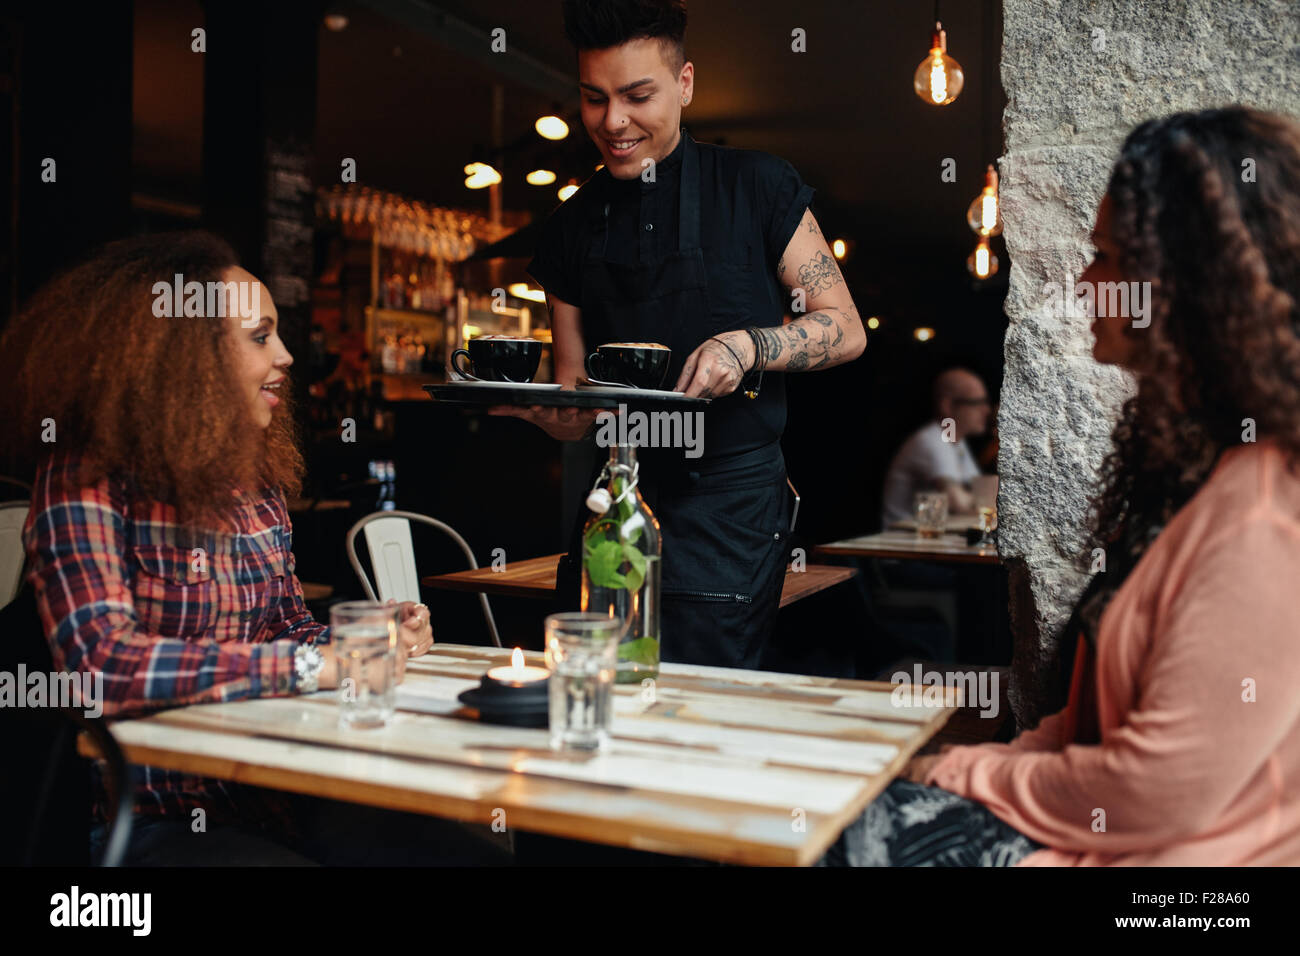 Zwei junge Frauen sitzen in einem Restaurant mit Kellner serviert Kaffee. Freundinnen im Coffee Shop. Stockfoto